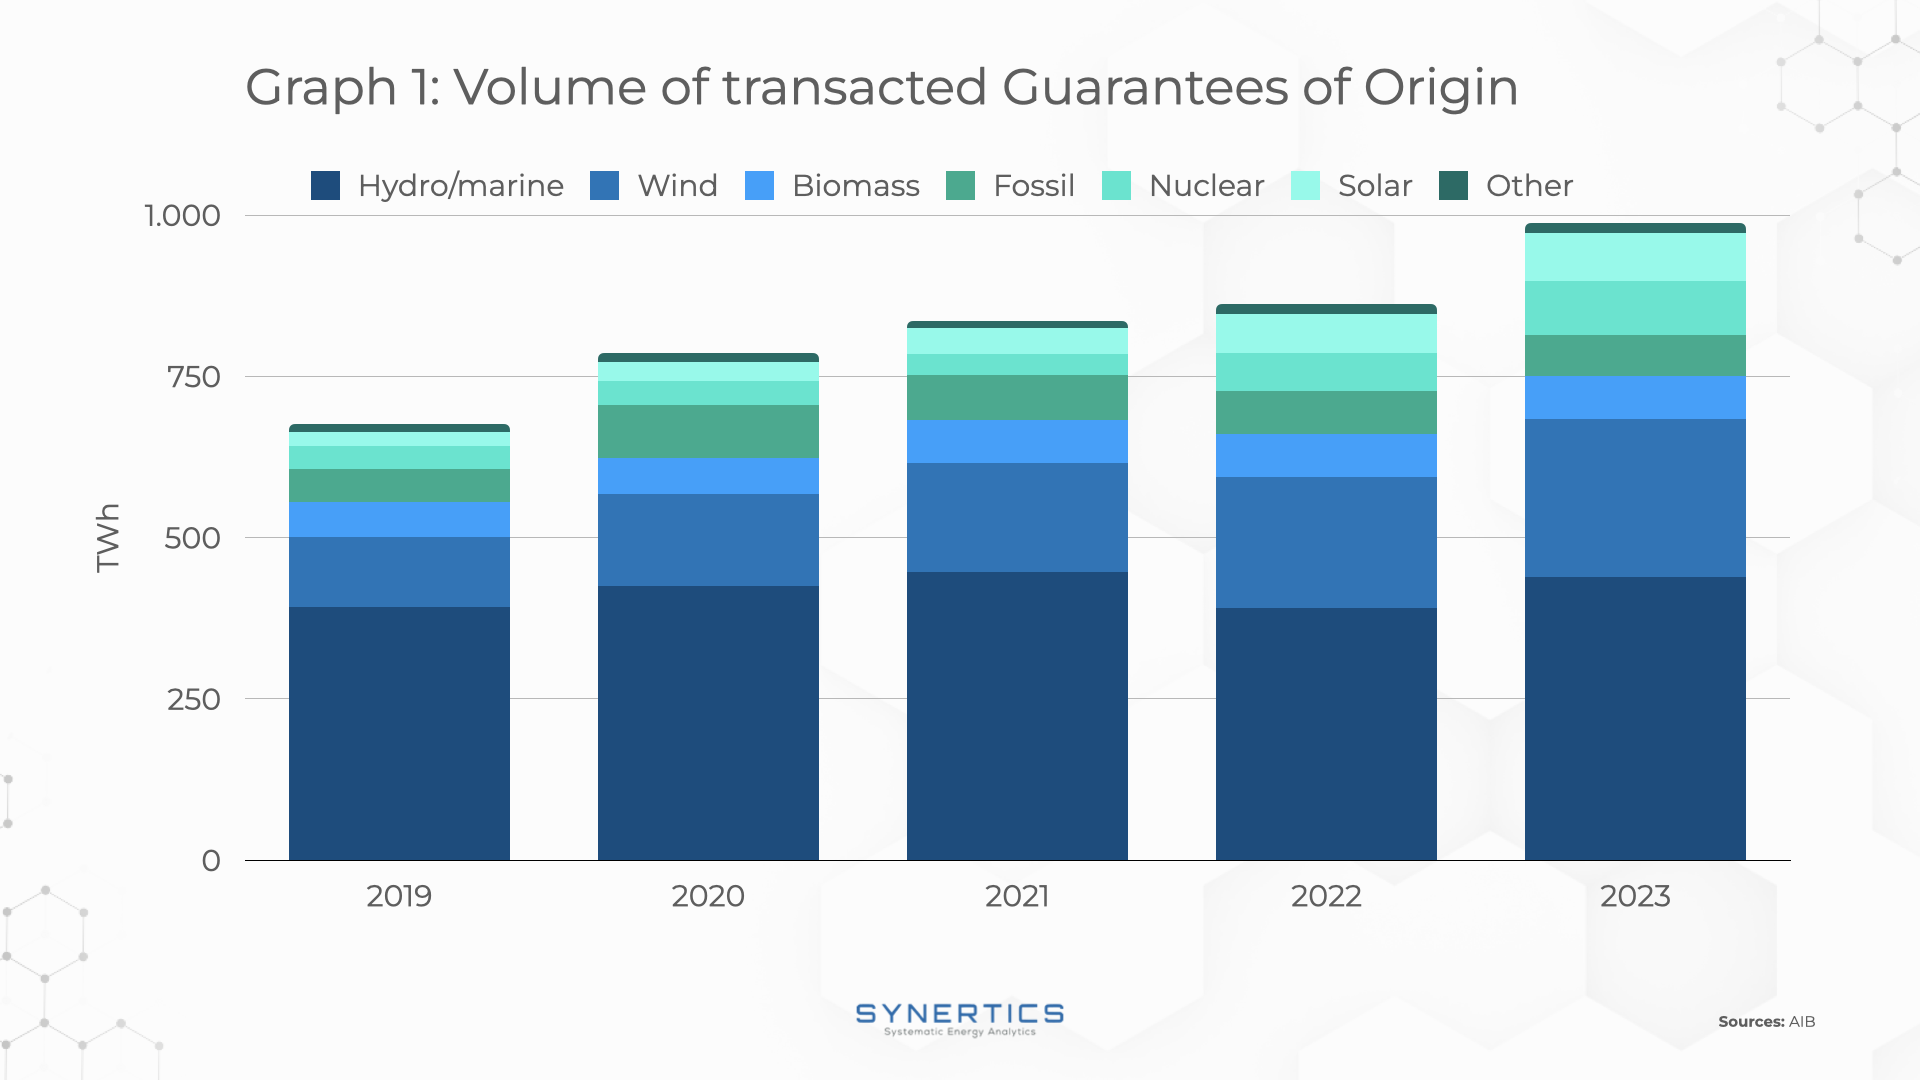 Volume of transacted Guarantees of Origin